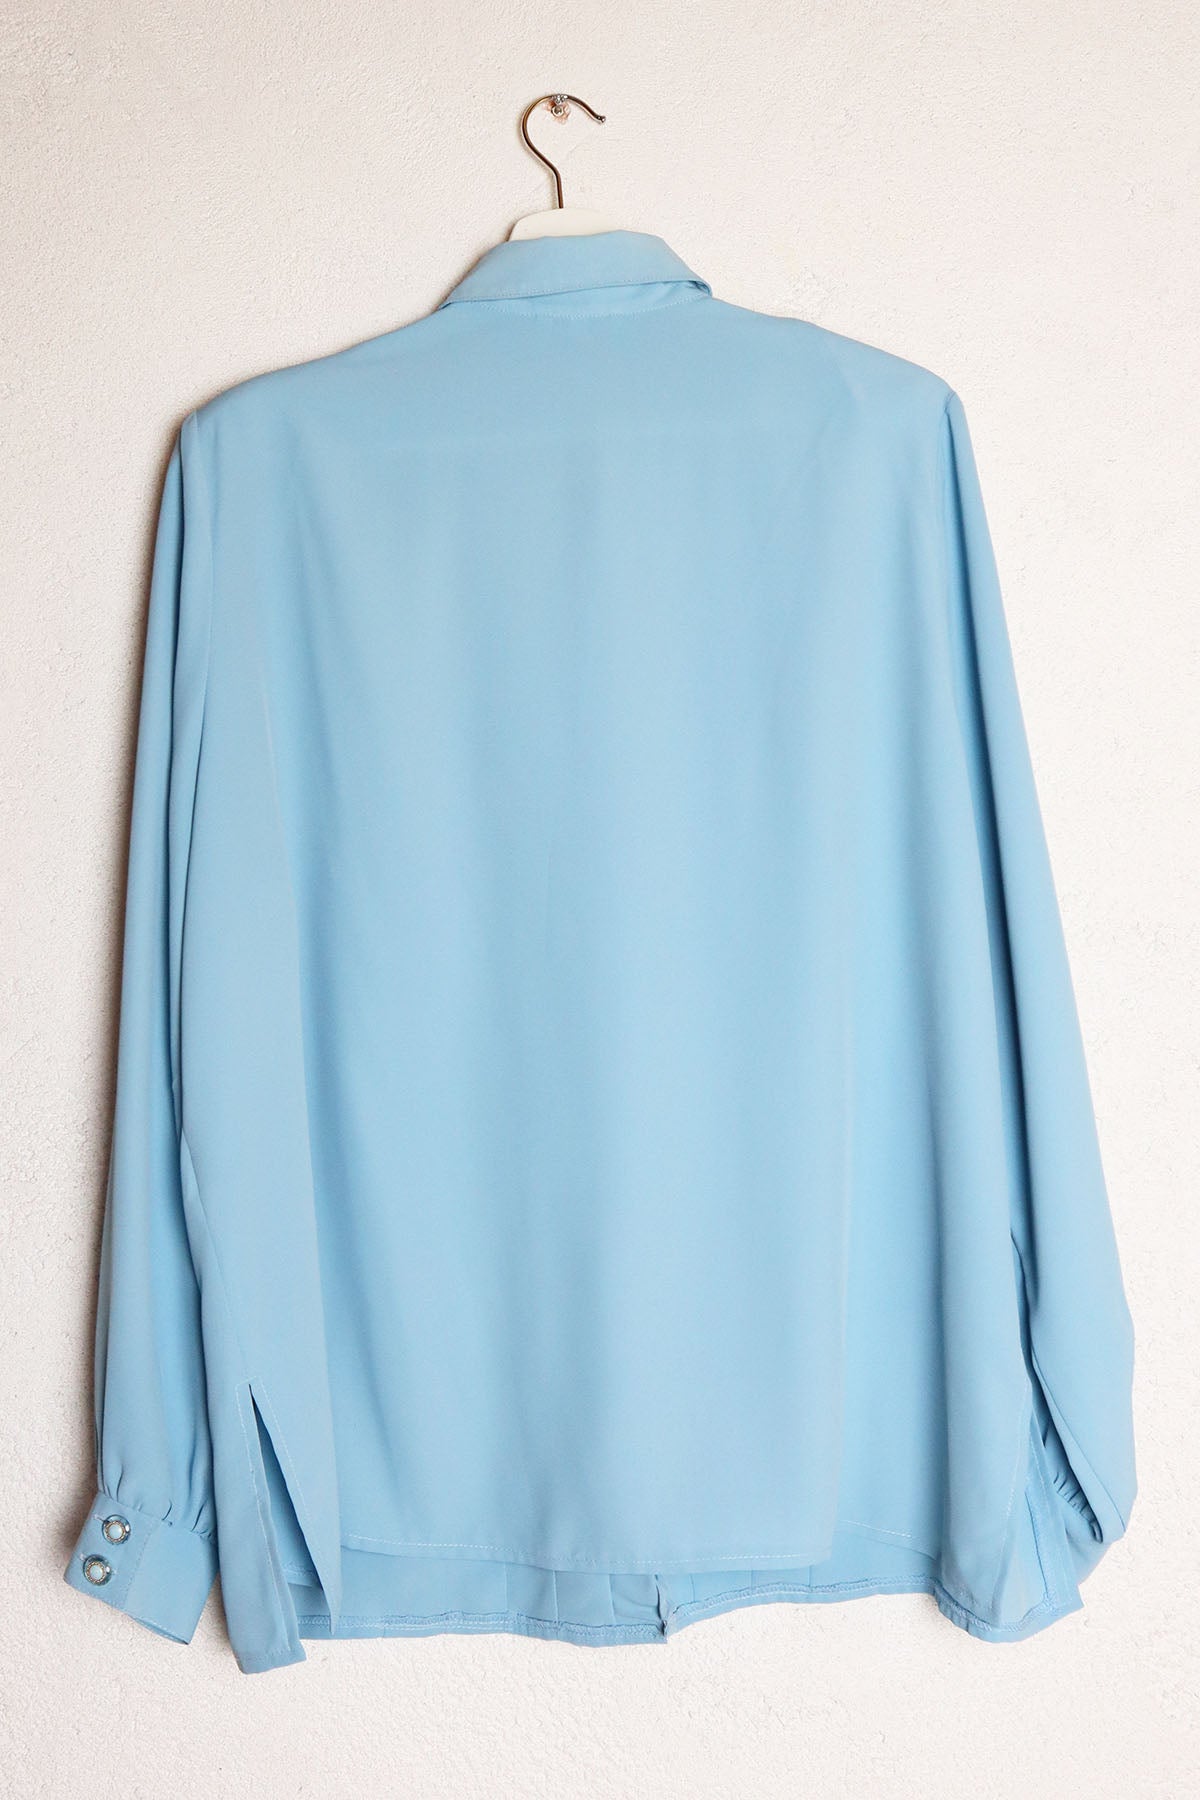 Bluse Vintage Elegant Hellblau